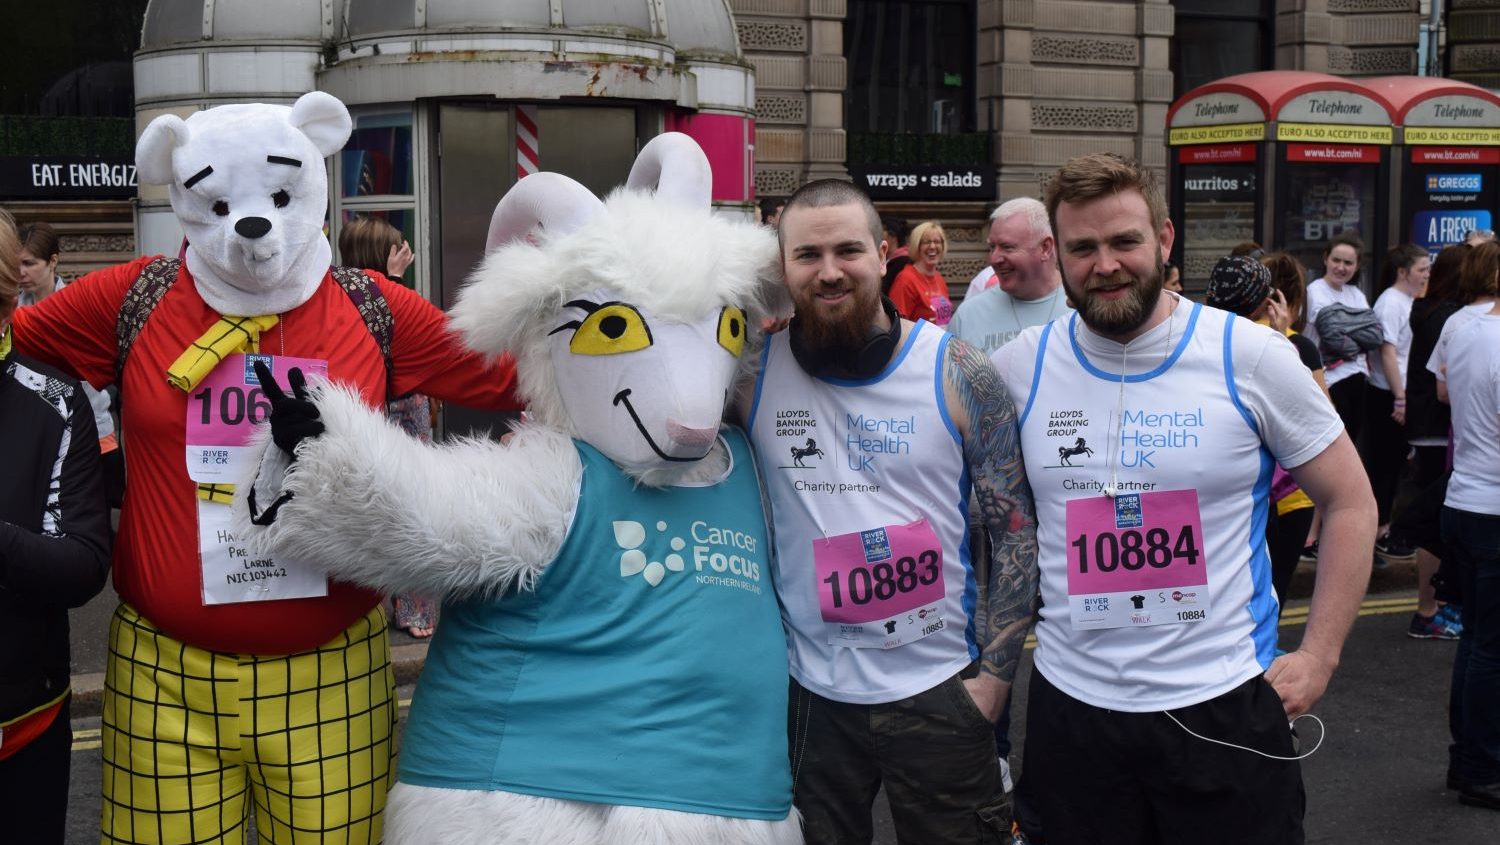 Belfast Marathon 2018